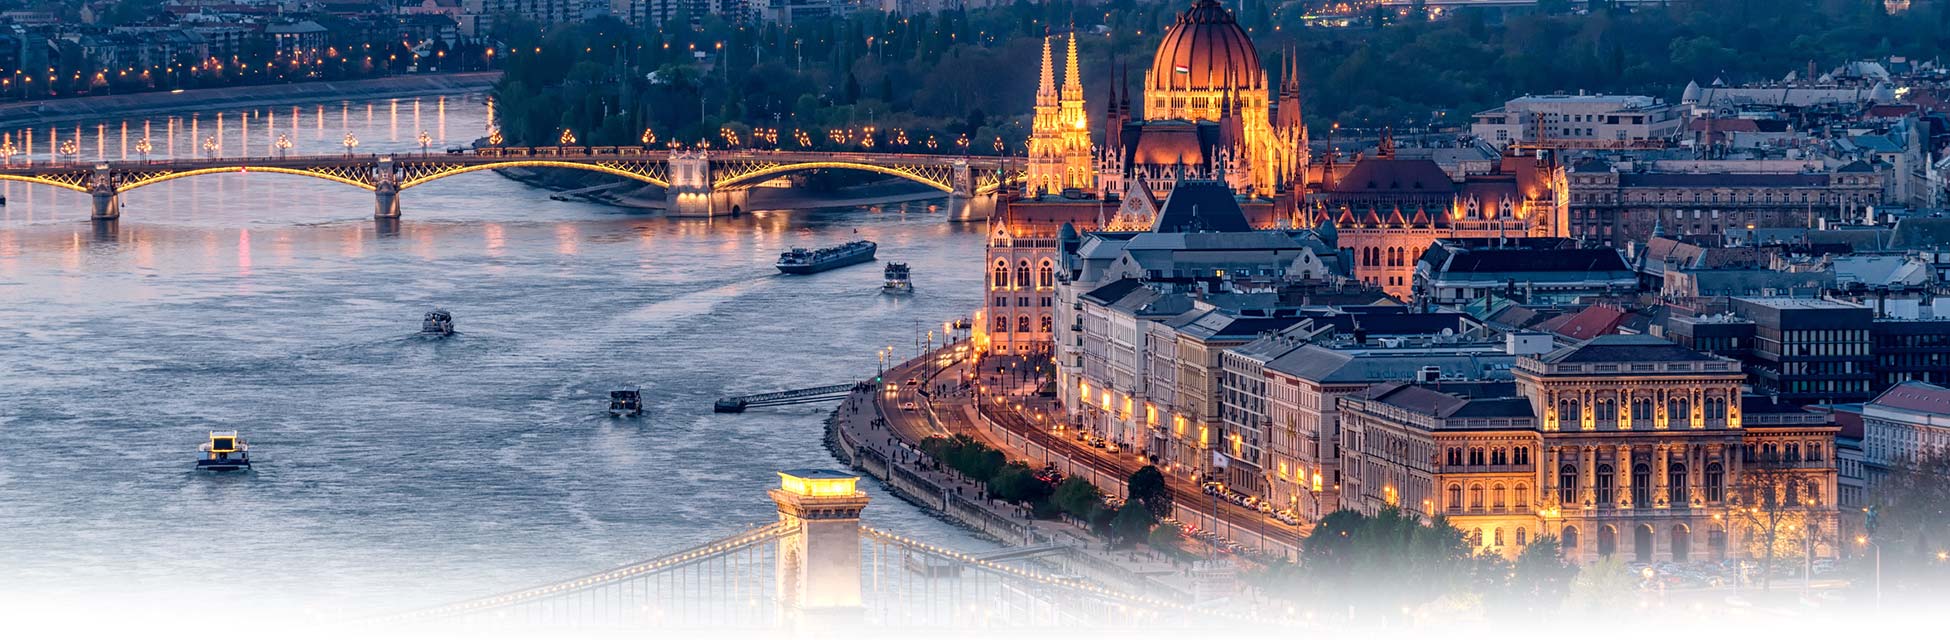 banner-riviercruise-budapest-hongarije-donau.jpg